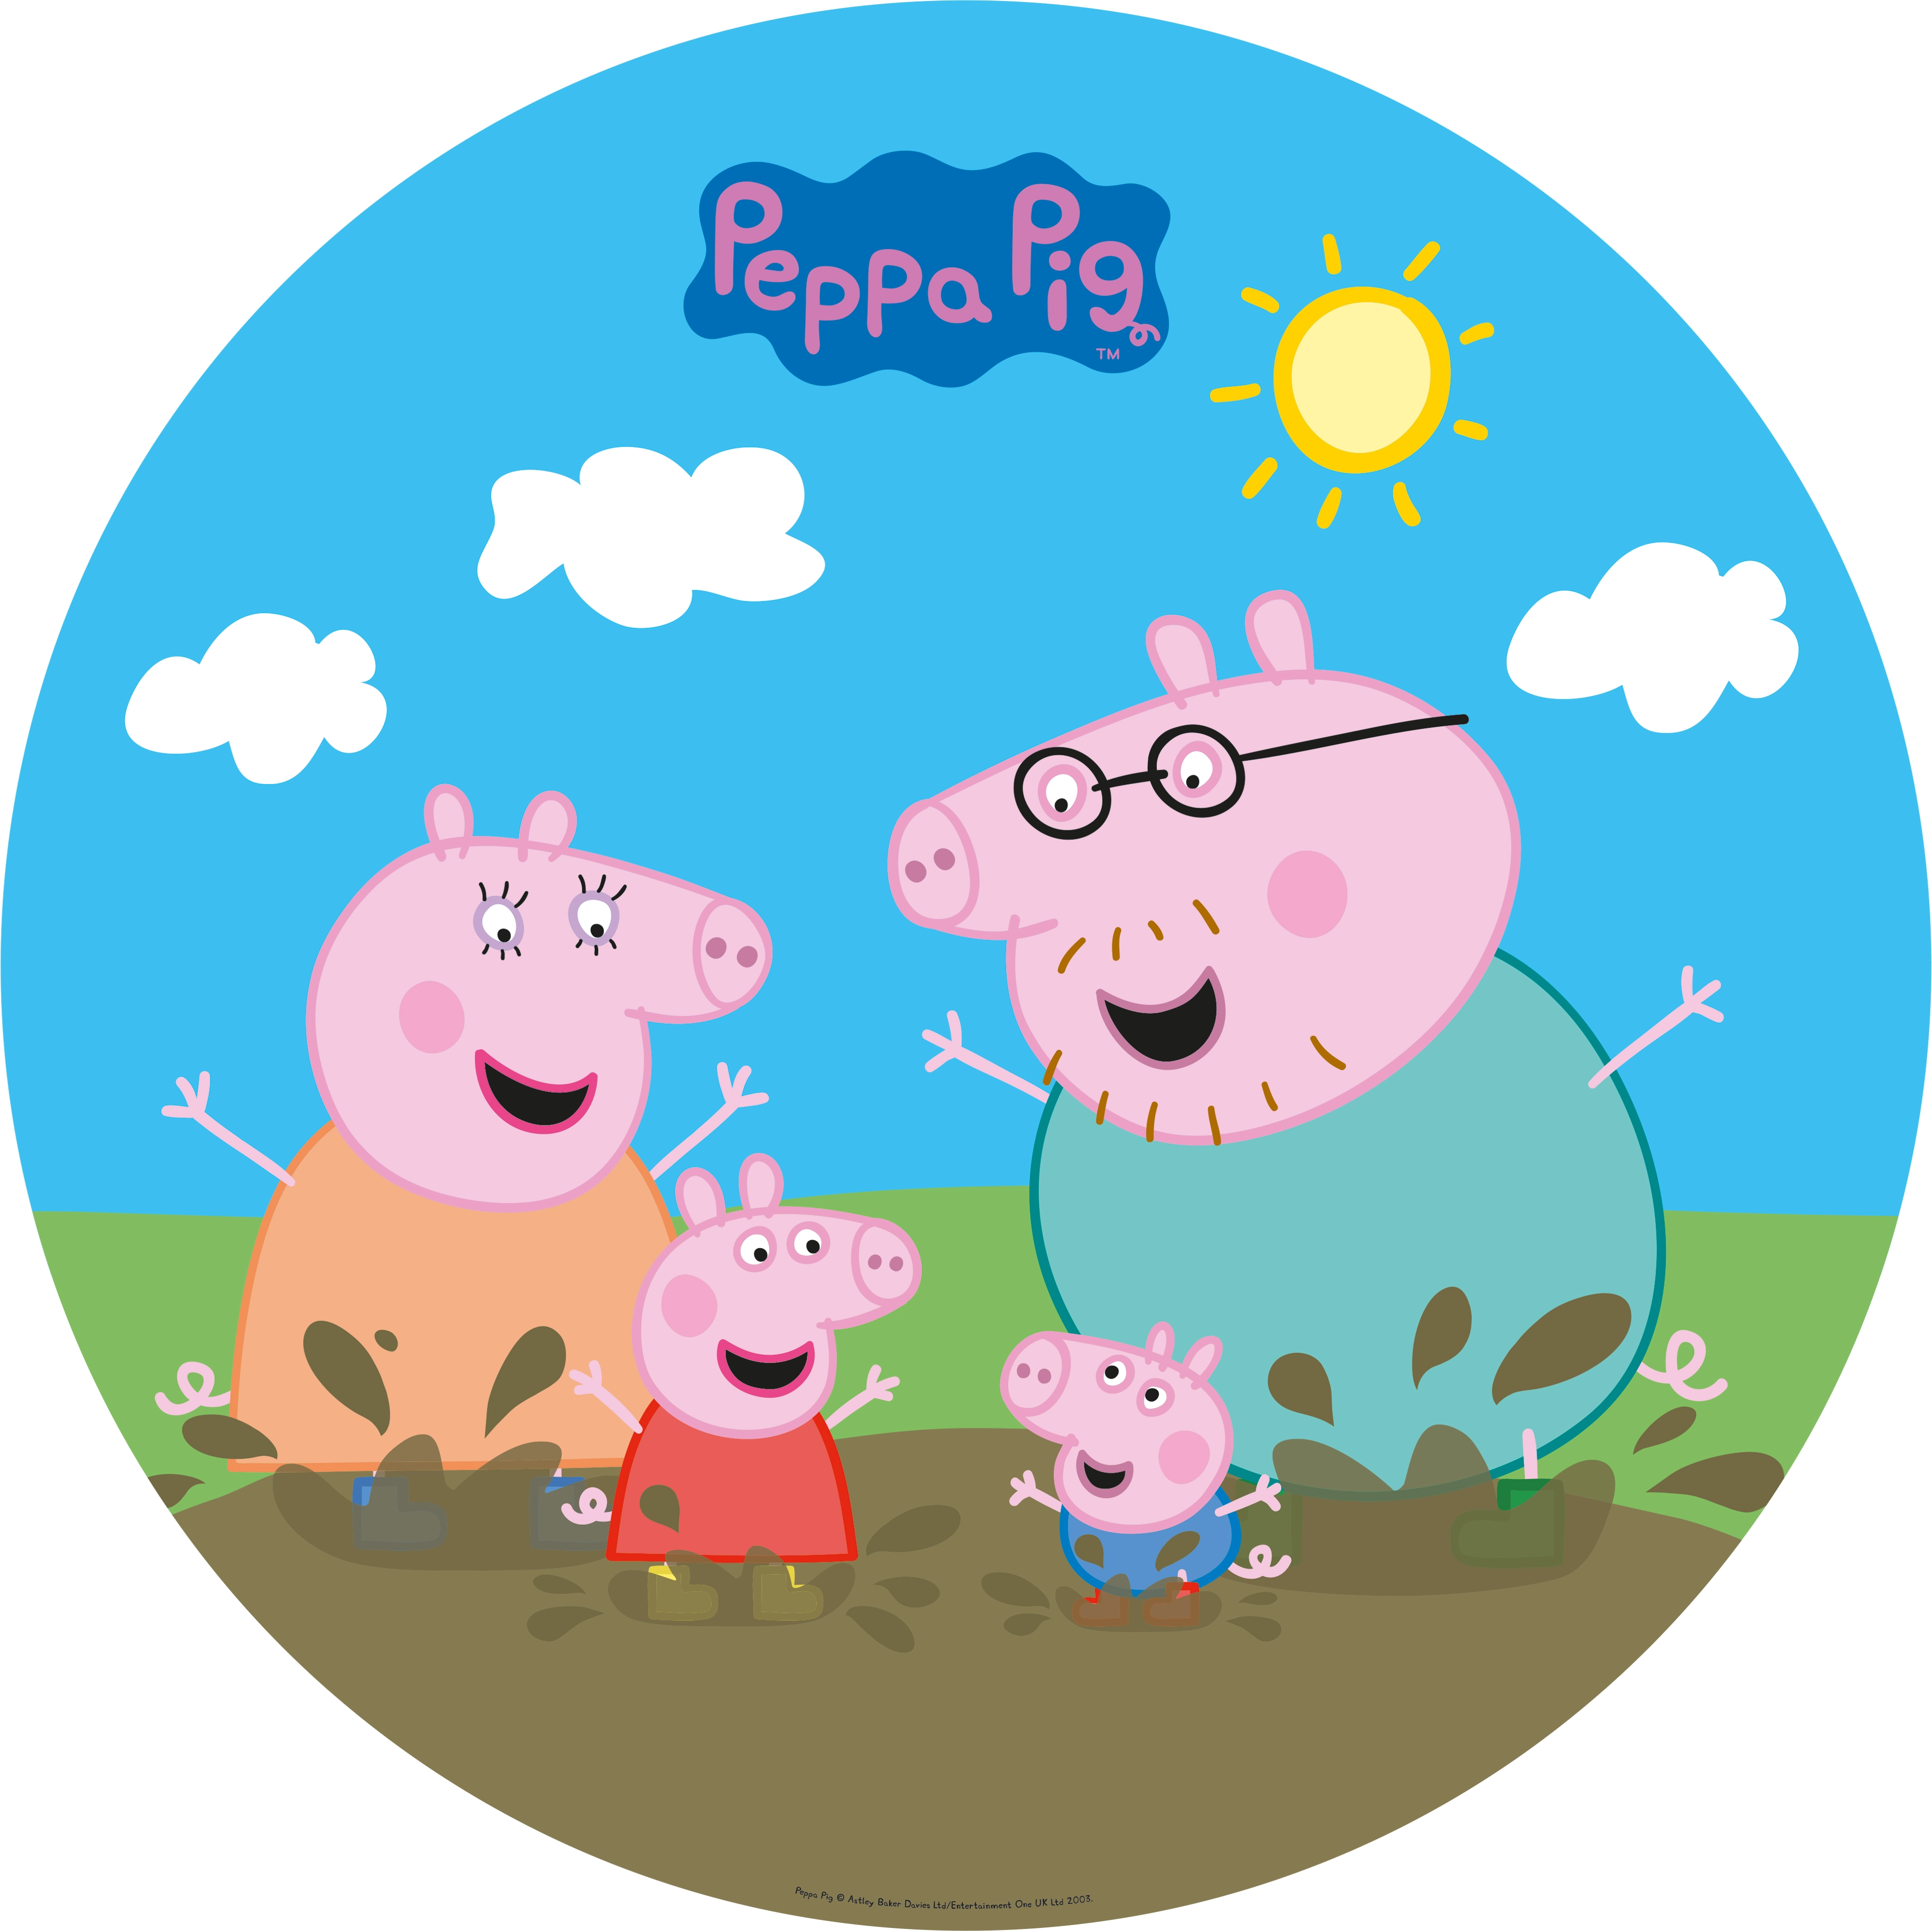 Happy People Peppa Pig Sprinklermatte Ø 150 cm kaufen bei OBI